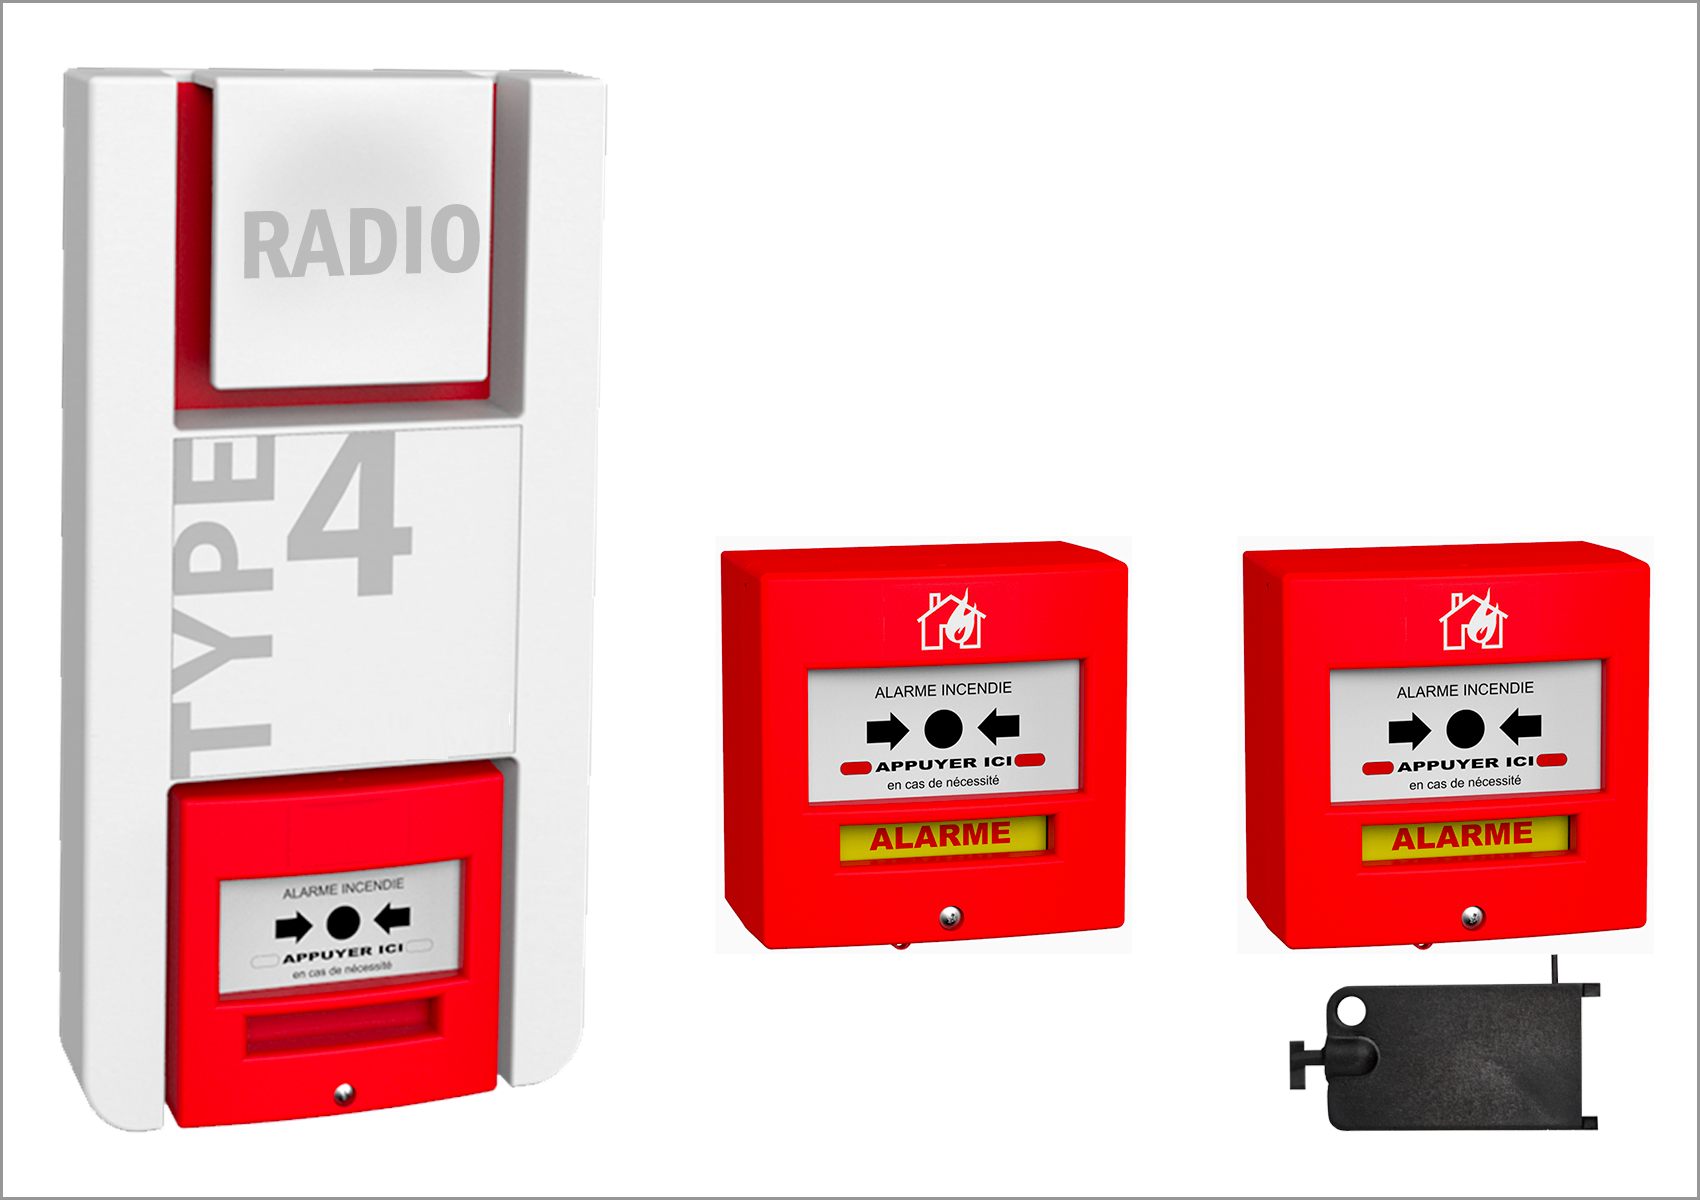 KIT Alarme Incendie de type 4 RADIO (1 Centrale + 2 Déclencheurs)